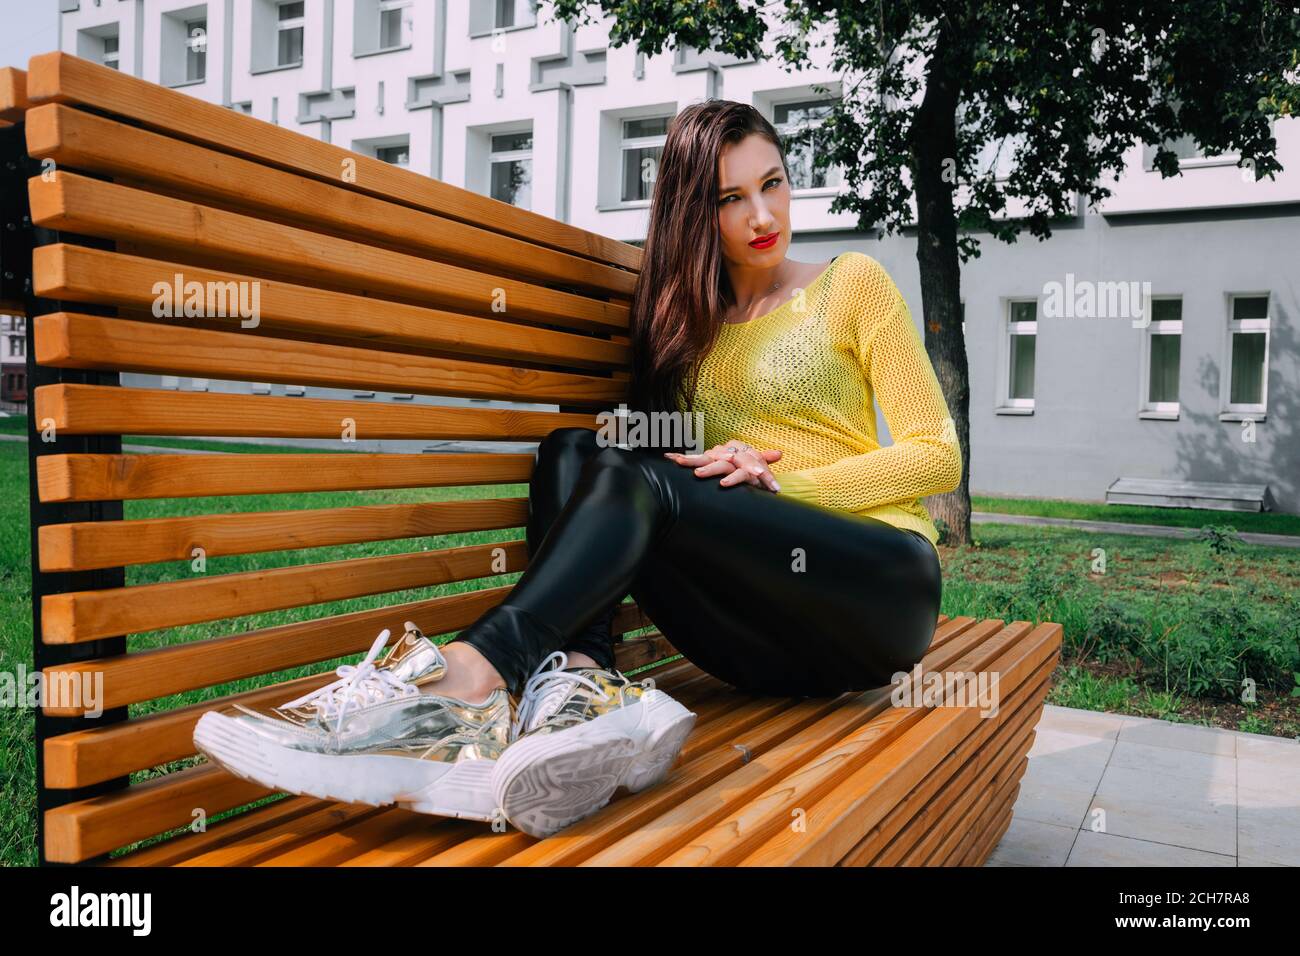 Bella ragazza con lunghi capelli scuri indossa un maglione giallo brillante, lucenti, stretti leggings scuri e sneakers dorate; si siede fuori su una panca di legno Foto Stock